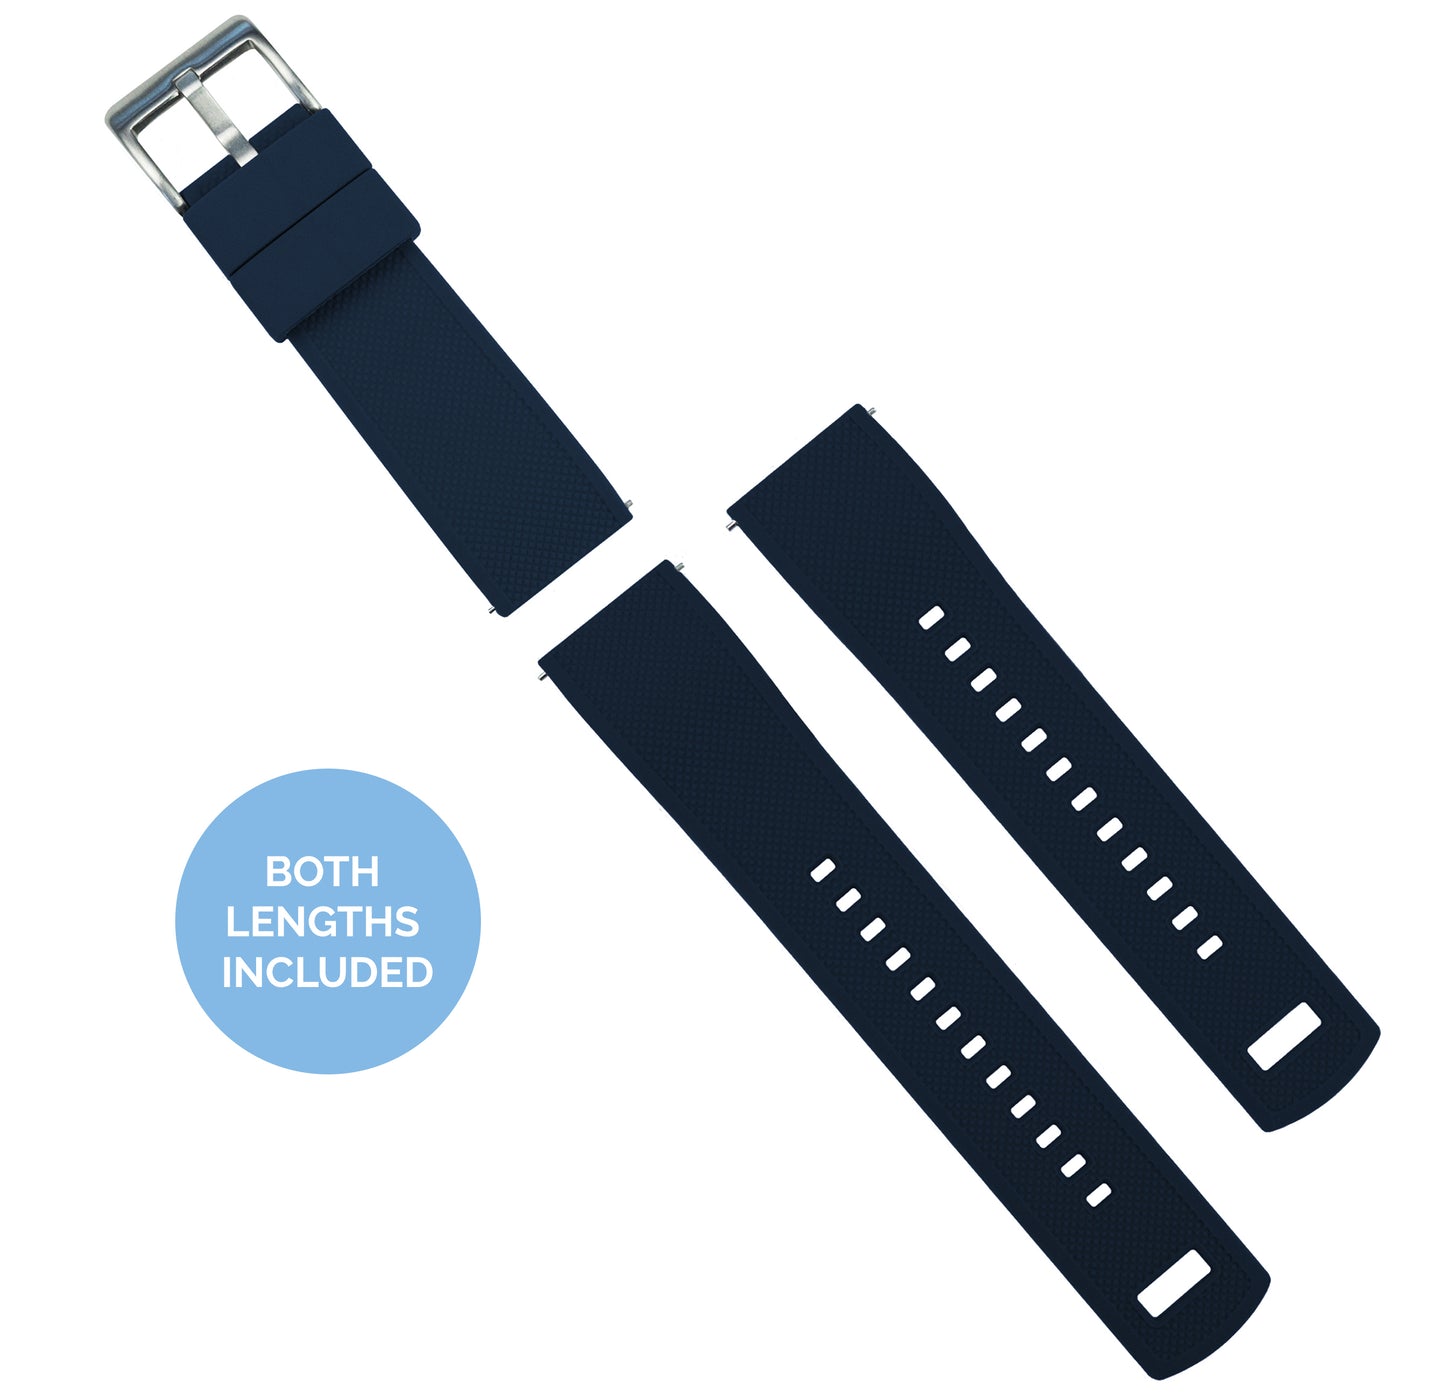 Samsung Galaxy Watch Fkm Rubber Navy Blue Watch Band